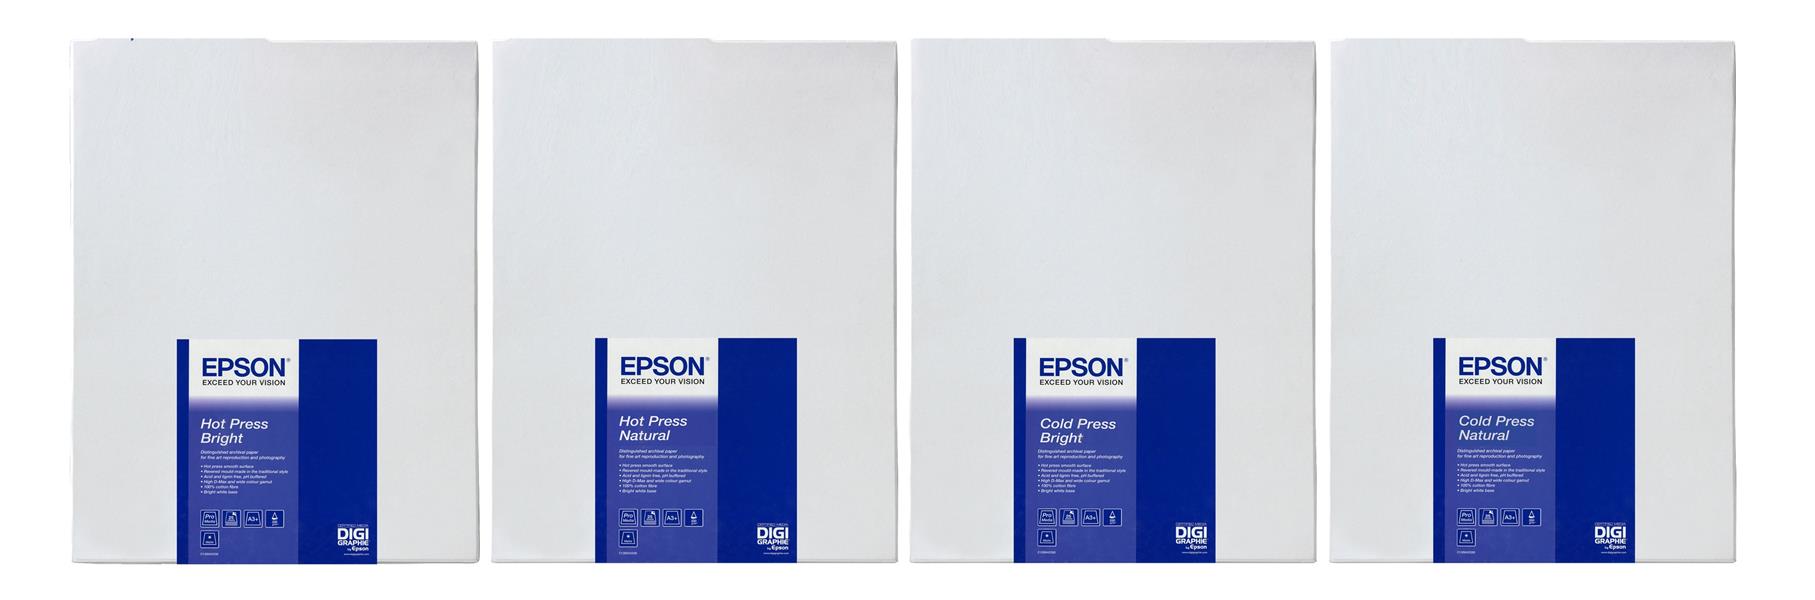 Epson Hot Press Bright 60""x 15m